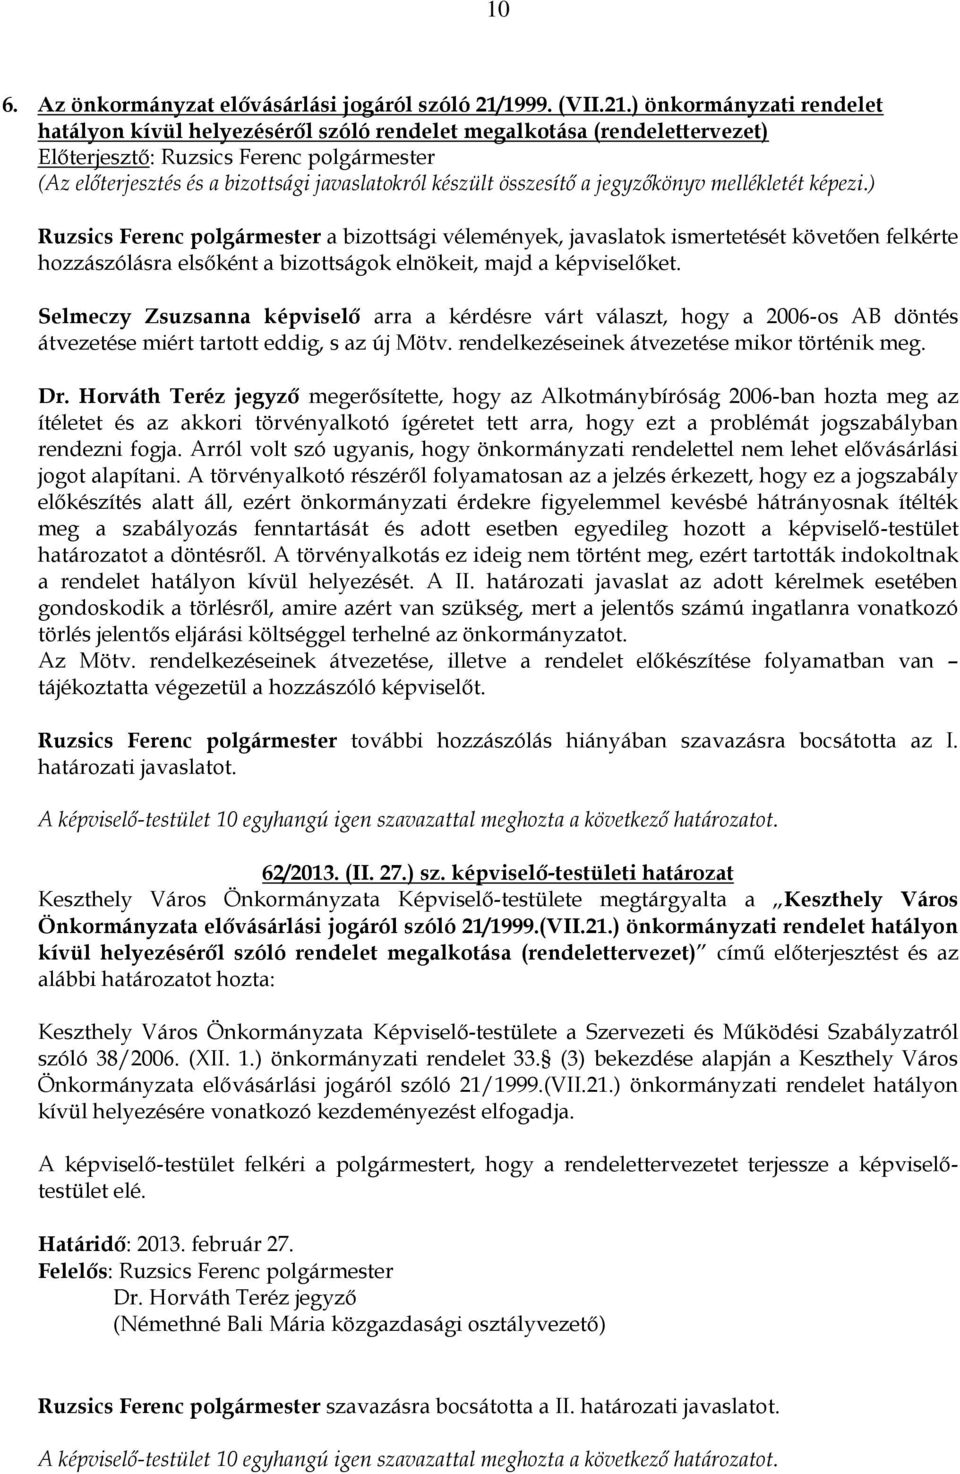 ) önkormányzati rendelet hatályon kívül helyezéséről szóló rendelet megalkotása (rendelettervezet) Ruzsics Ferenc polgármester a bizottsági vélemények, javaslatok ismertetését követően felkérte